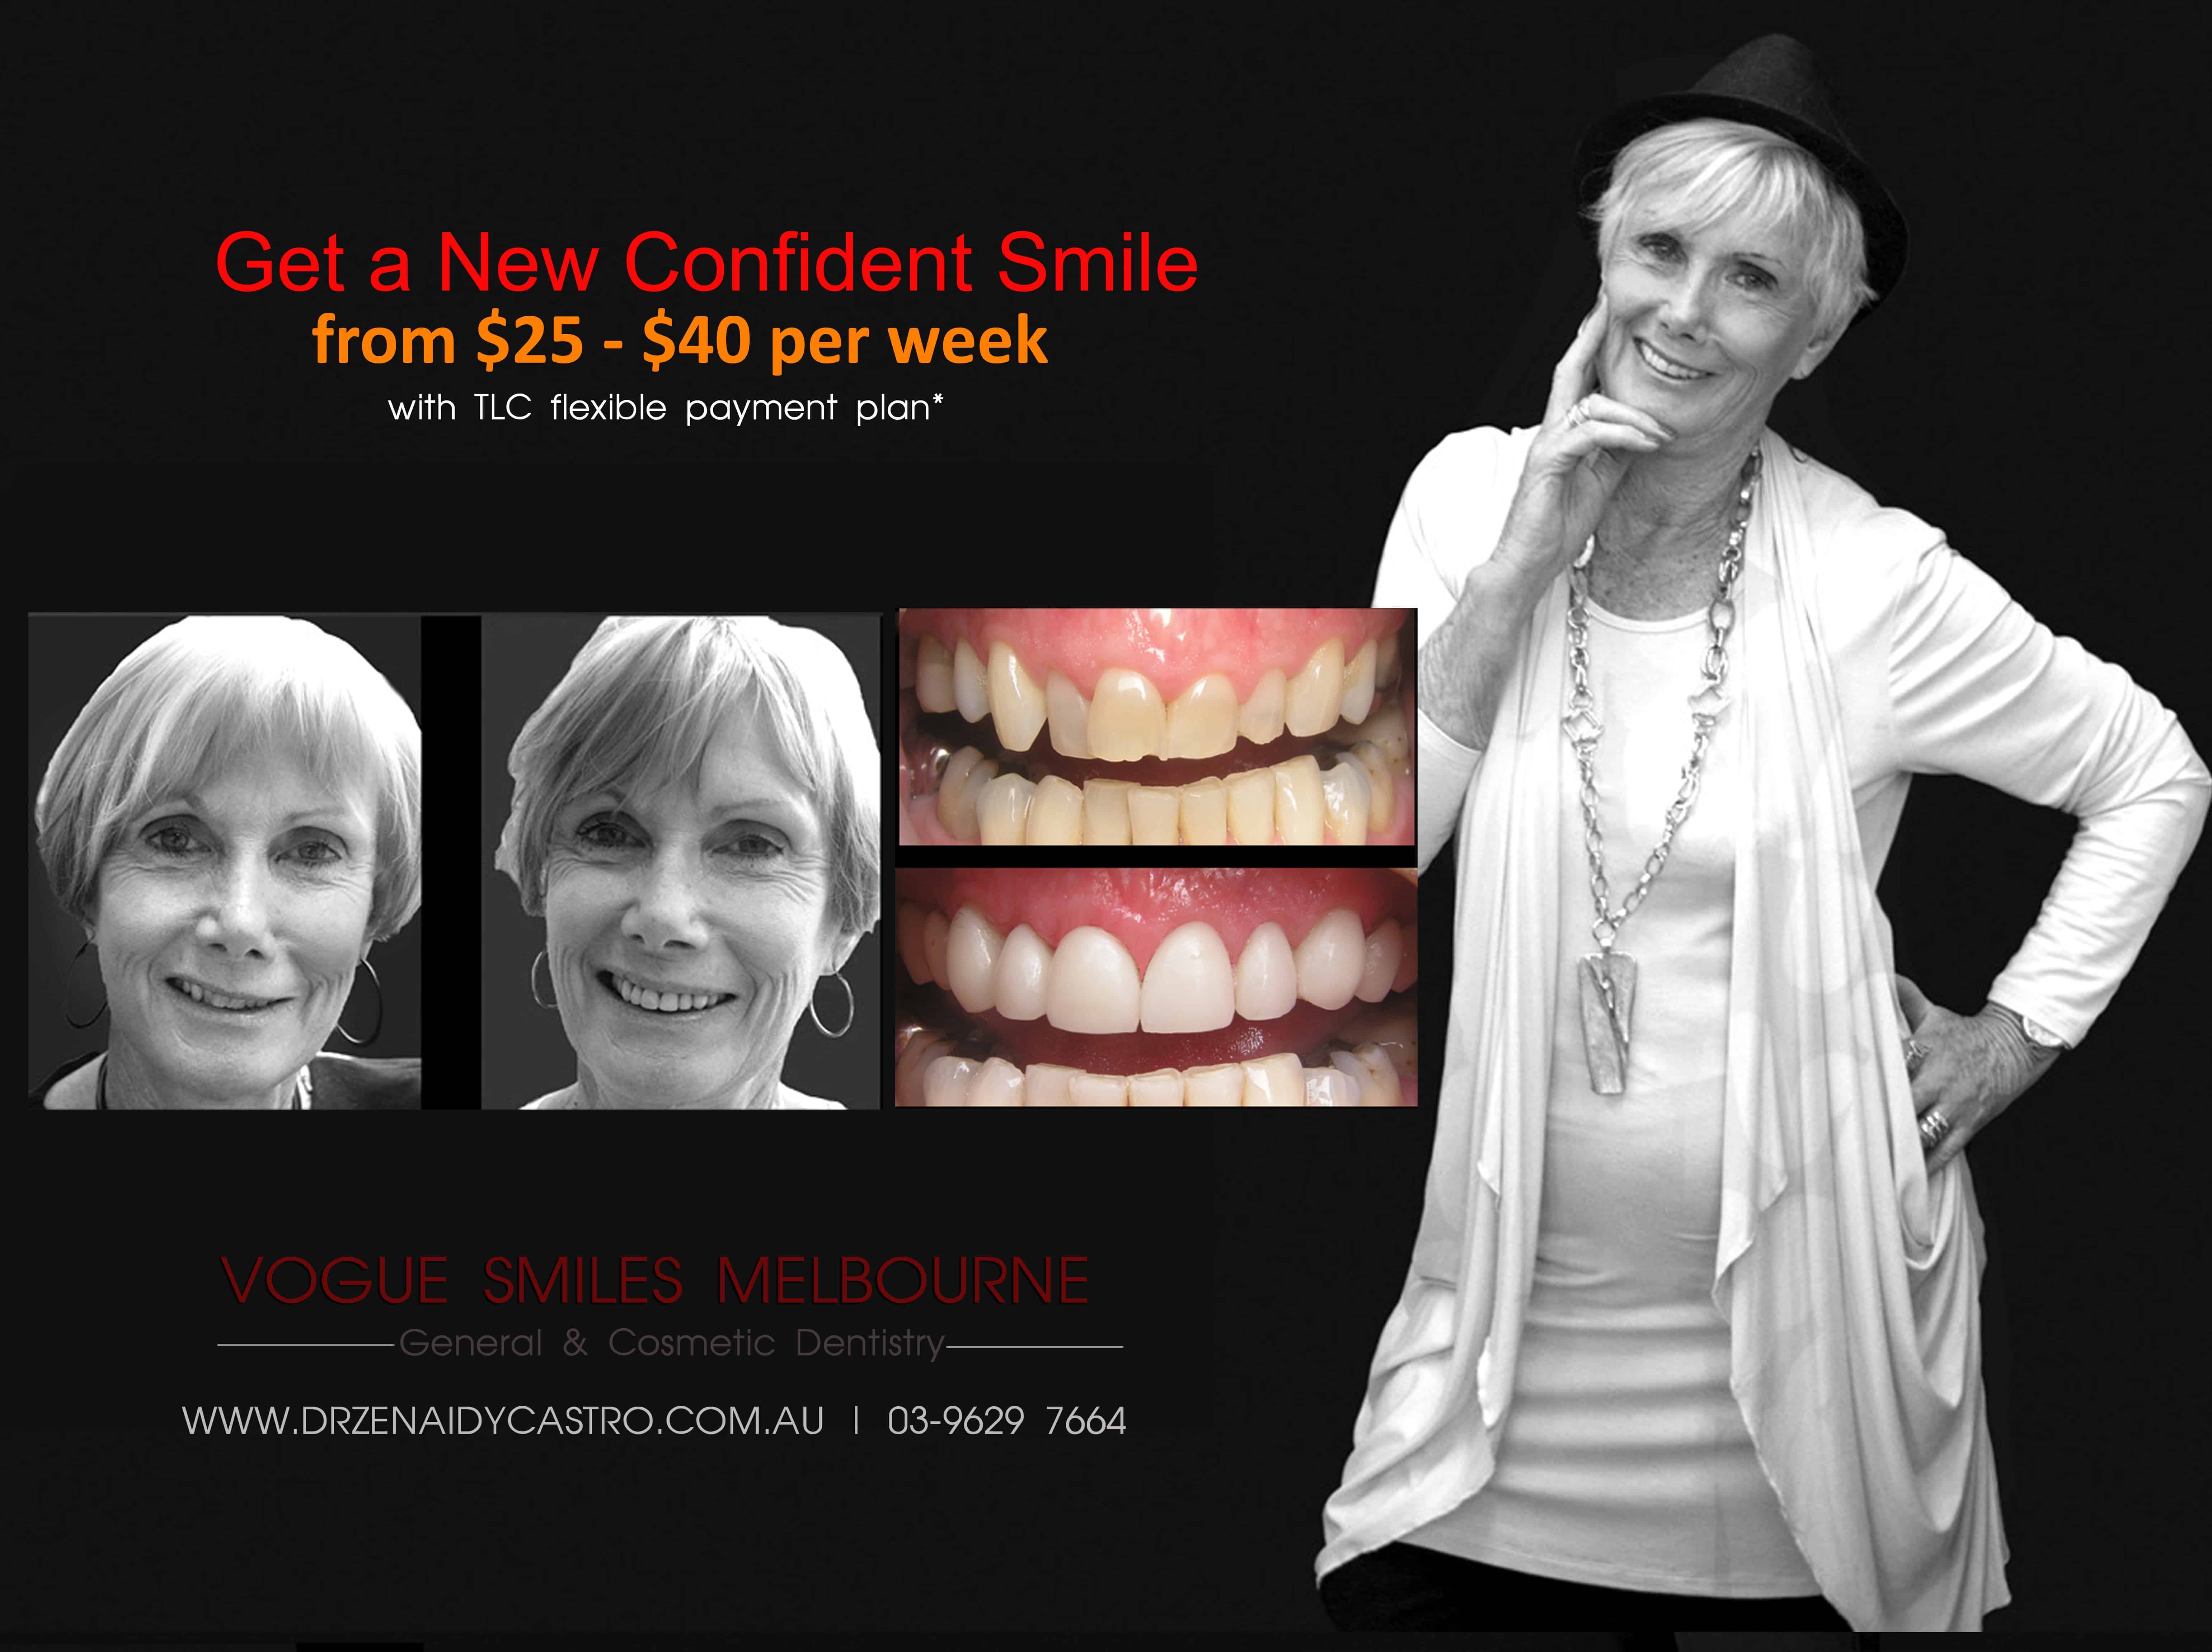 Dental Facelift Melbourne